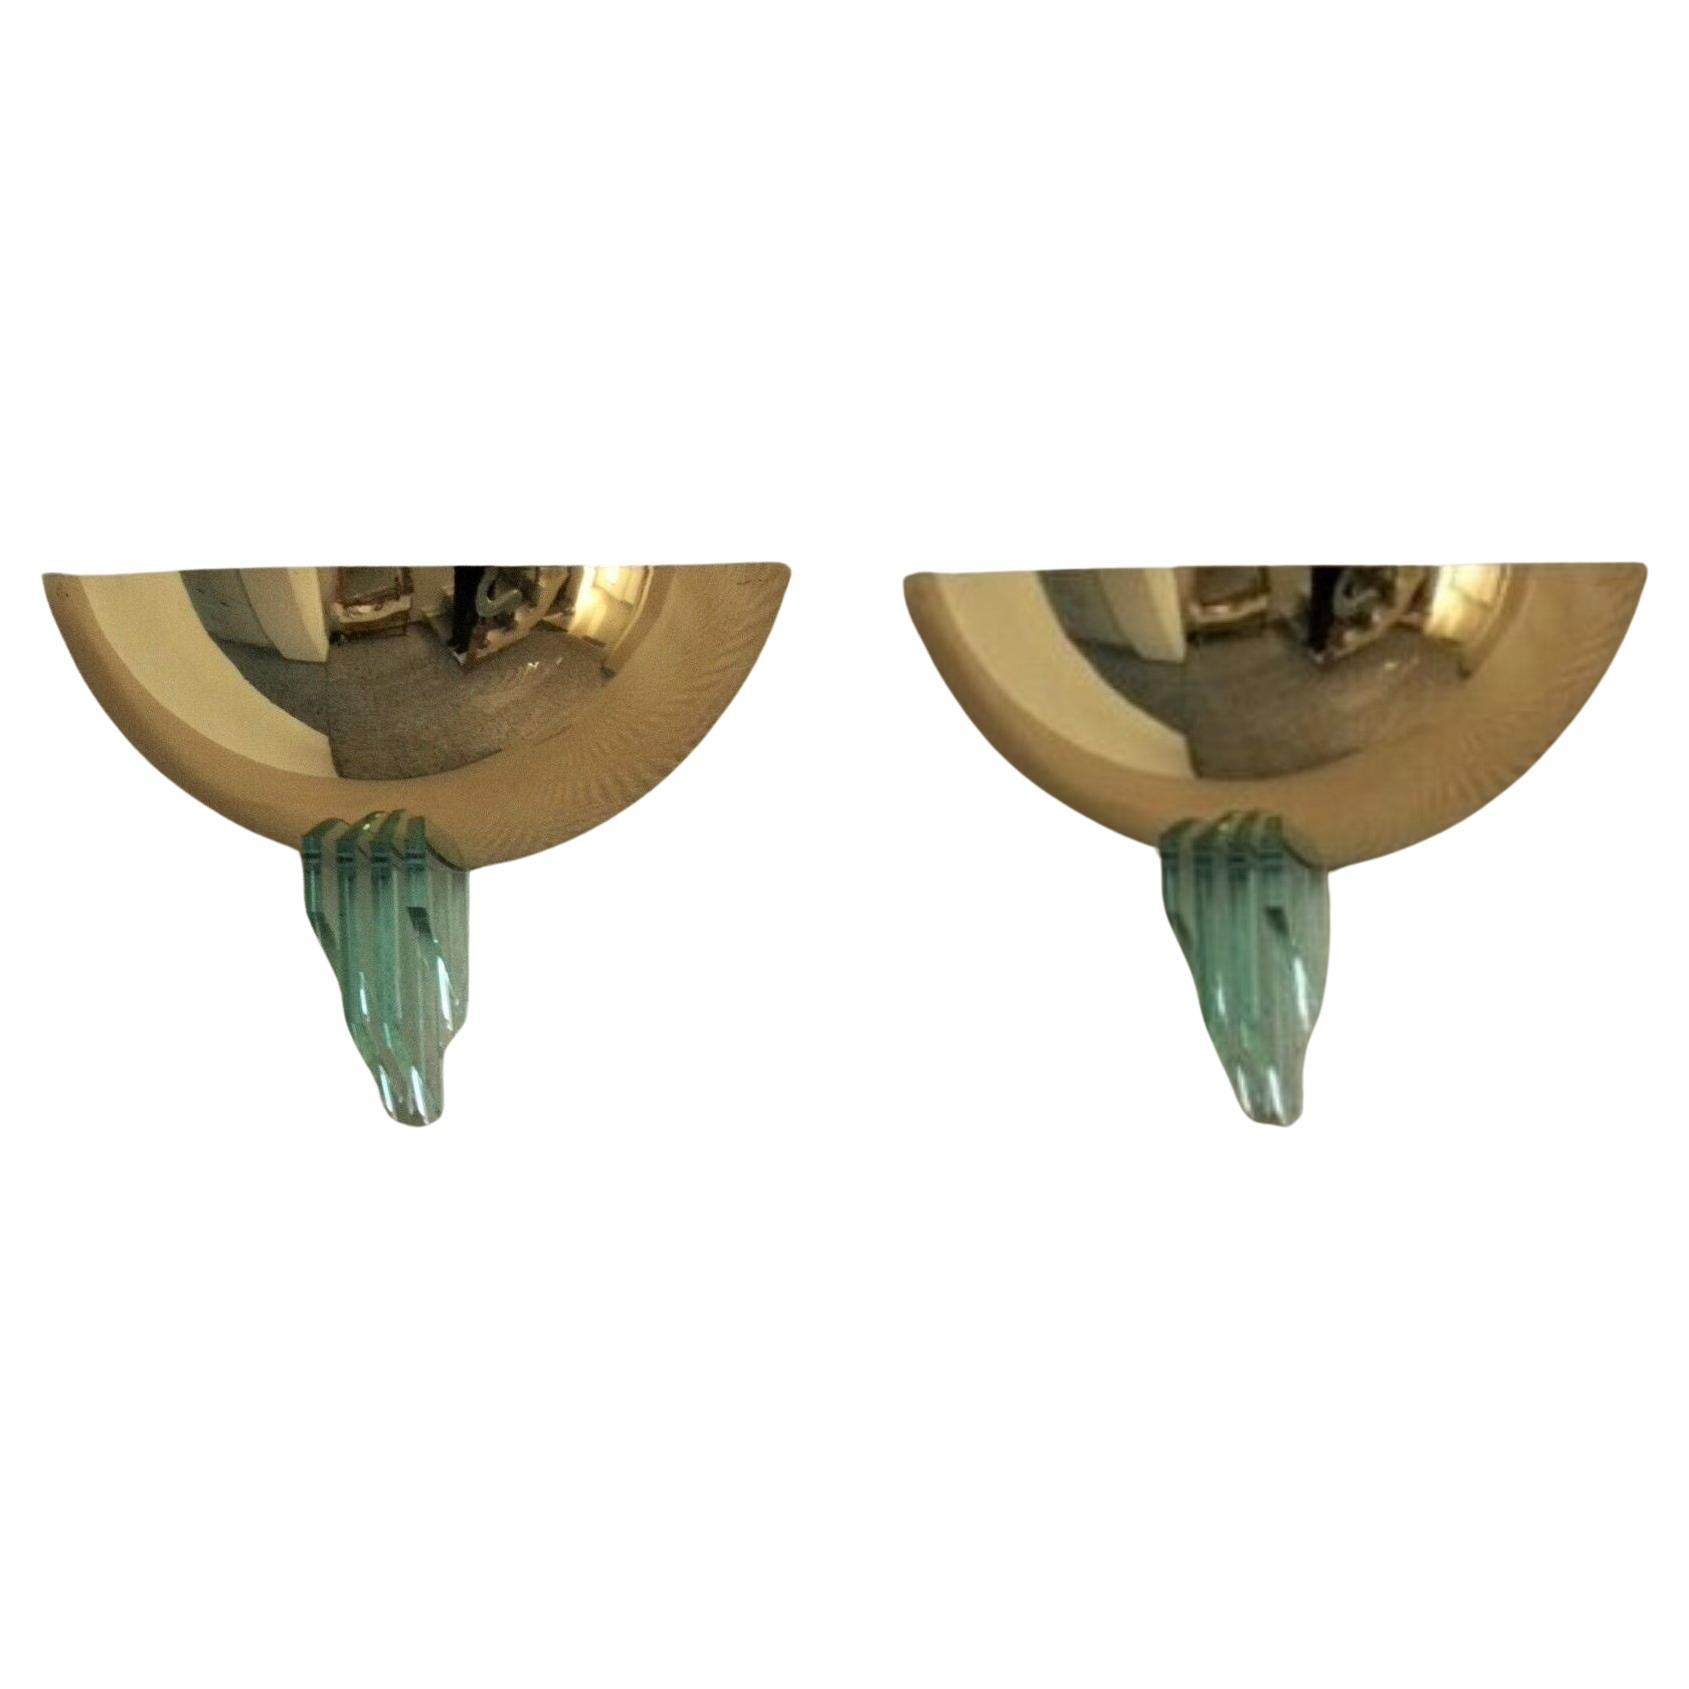 Ein Paar Wandleuchten aus Messing und Murano-Glas im Stil von Fontana Arte, Italien, 1960er Jahre. Halbschalenform, dekoriert mit vier geometrischen Profilen aus dickem, poliertem Glas auf dem Sockel. Jede Leuchte kann mit einer